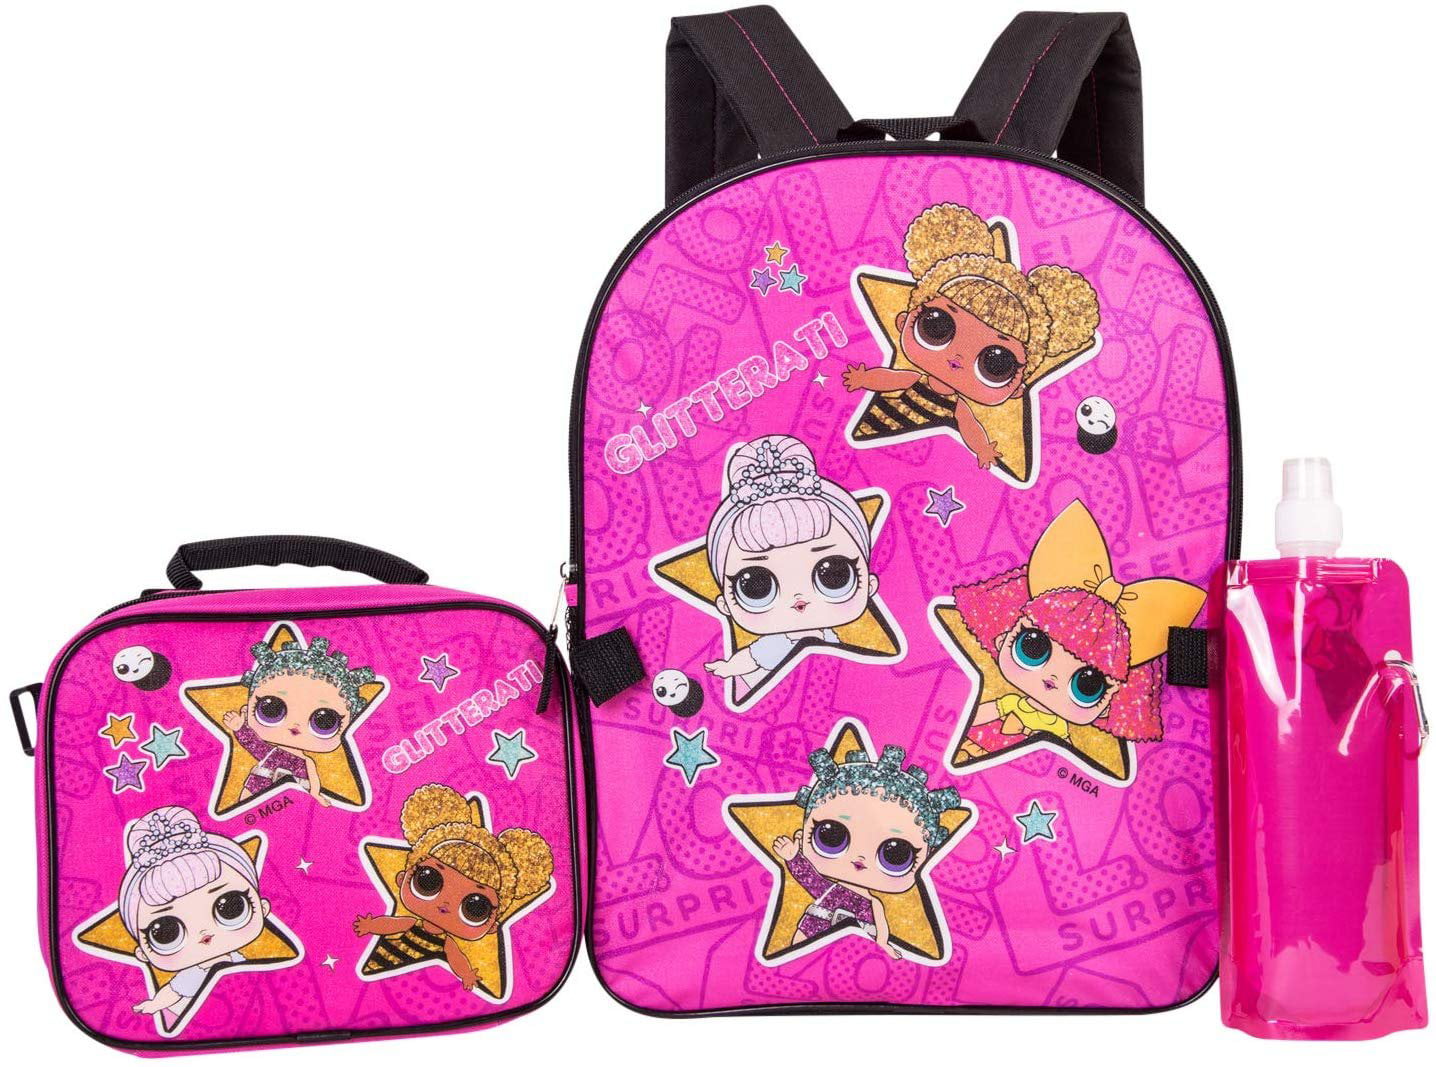 L.O.L Surprise Glitterati Girls School Book bag Backpack Lunch Box Kids Gift 